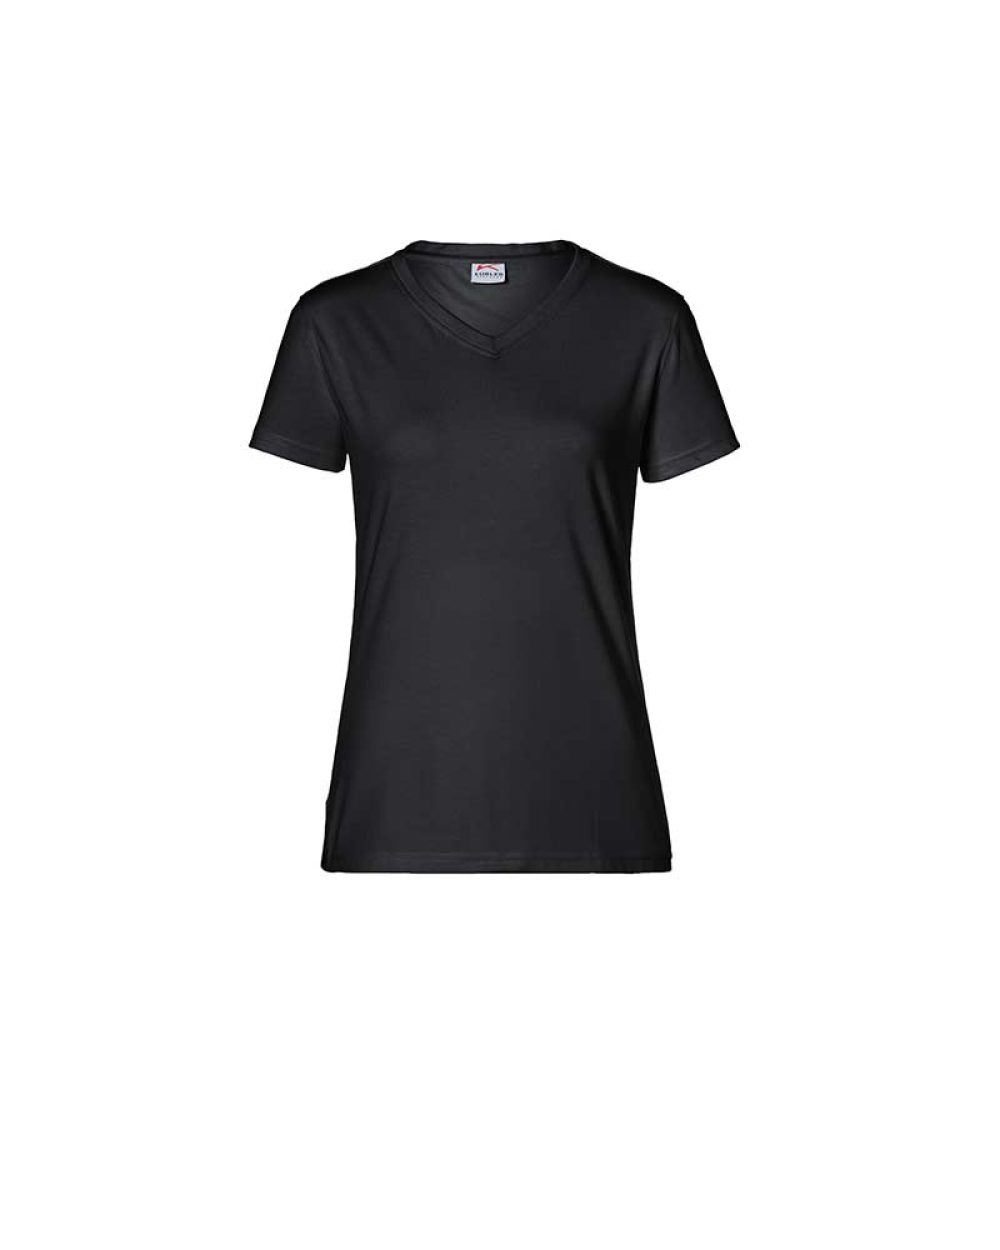 KÜBLER Damen T-Shirt Nr. 5024